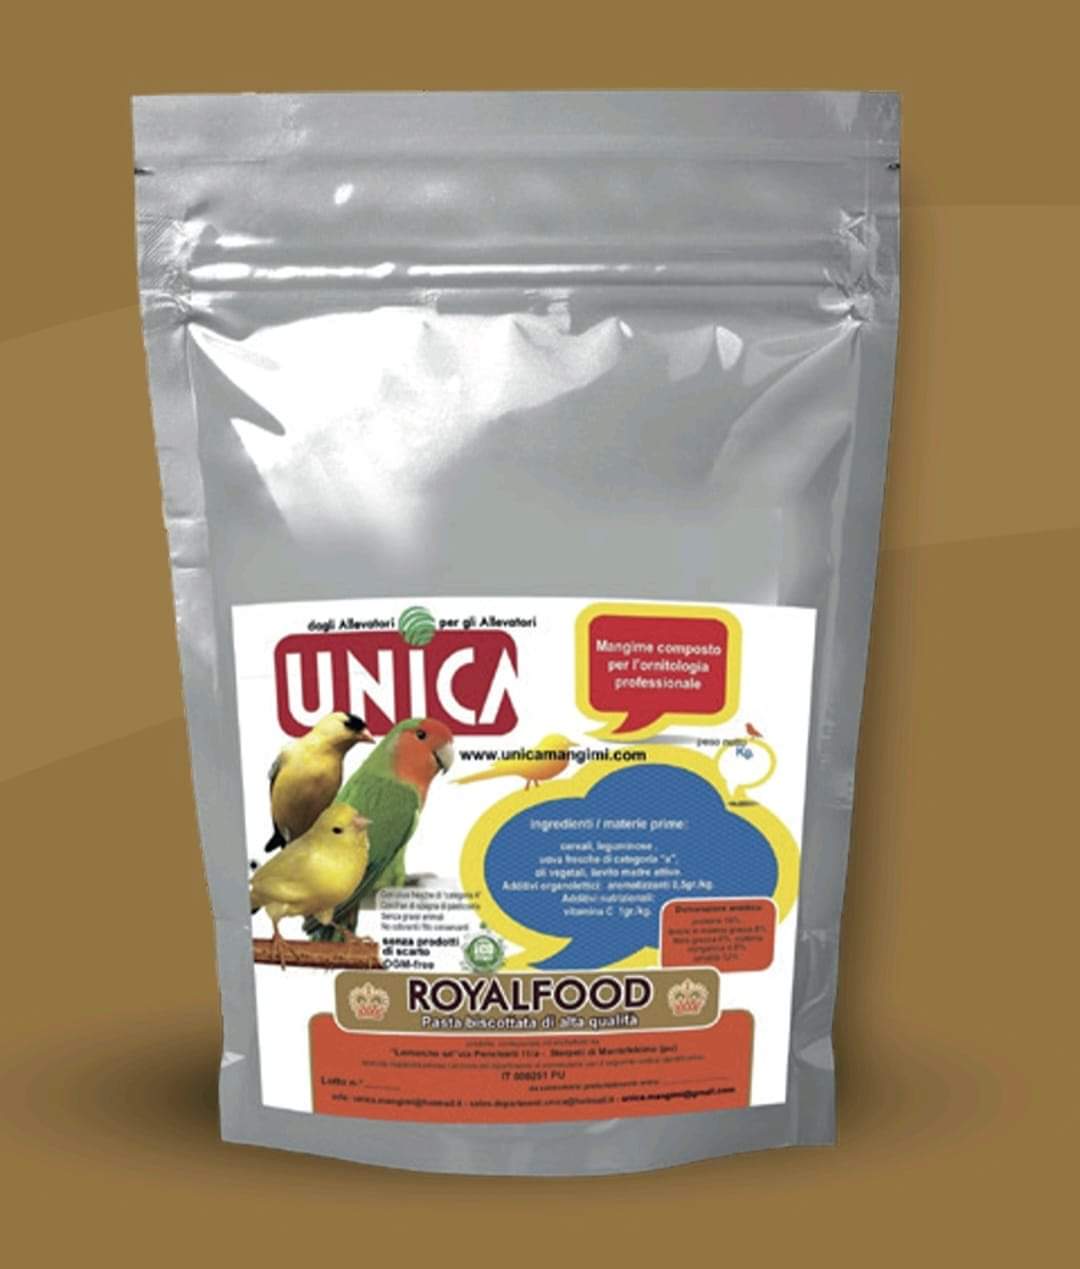 RoyalFood 2kg - droog eivoer - alle vogels - proteïne 18% - Unica